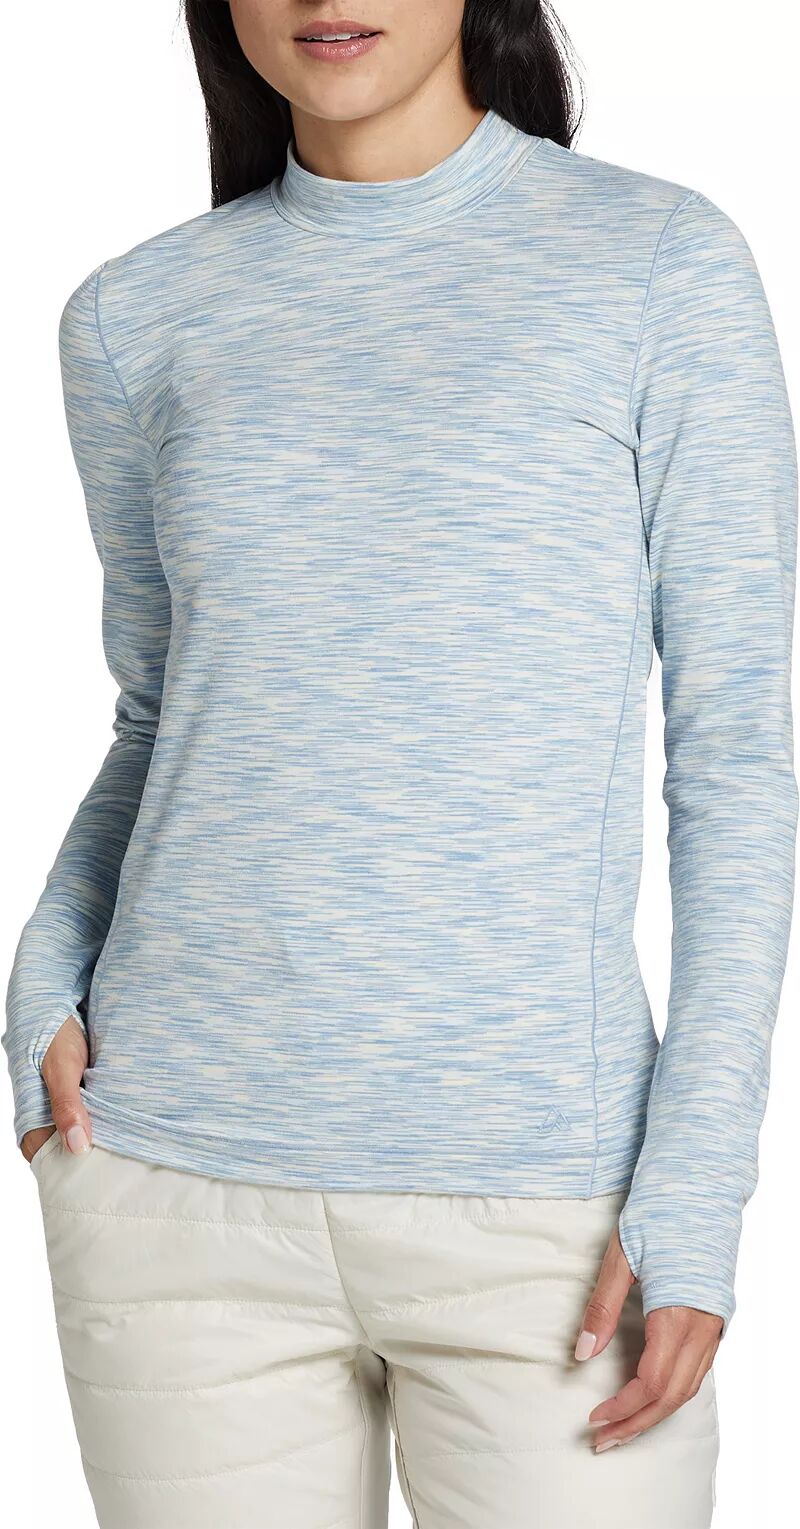 Женская рубашка полевой вязки Alpine Design с воротником-стойкой